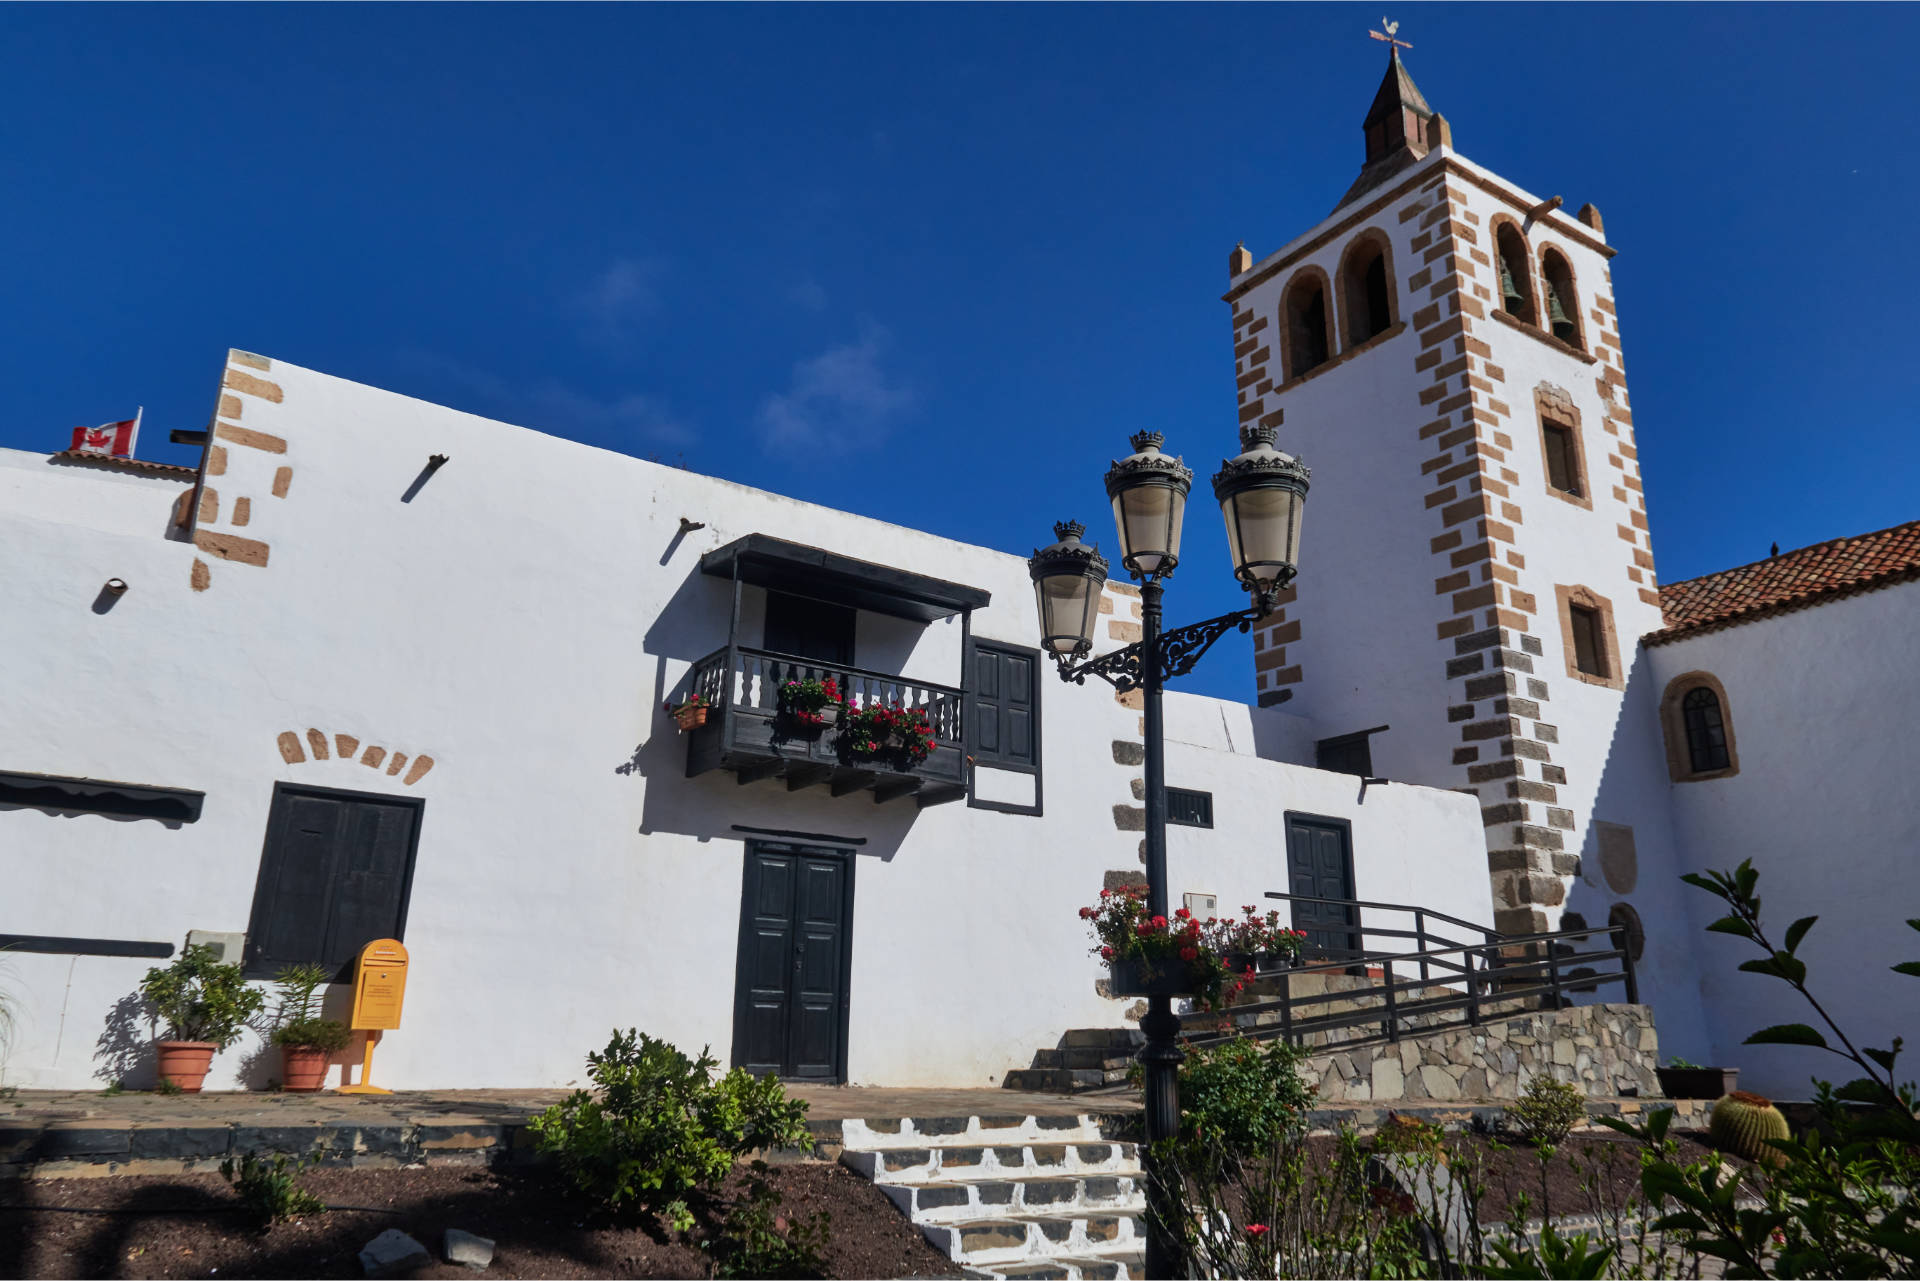 Betancuria auf Fuerteventura – die erste Hauptstadt der Kanaren.